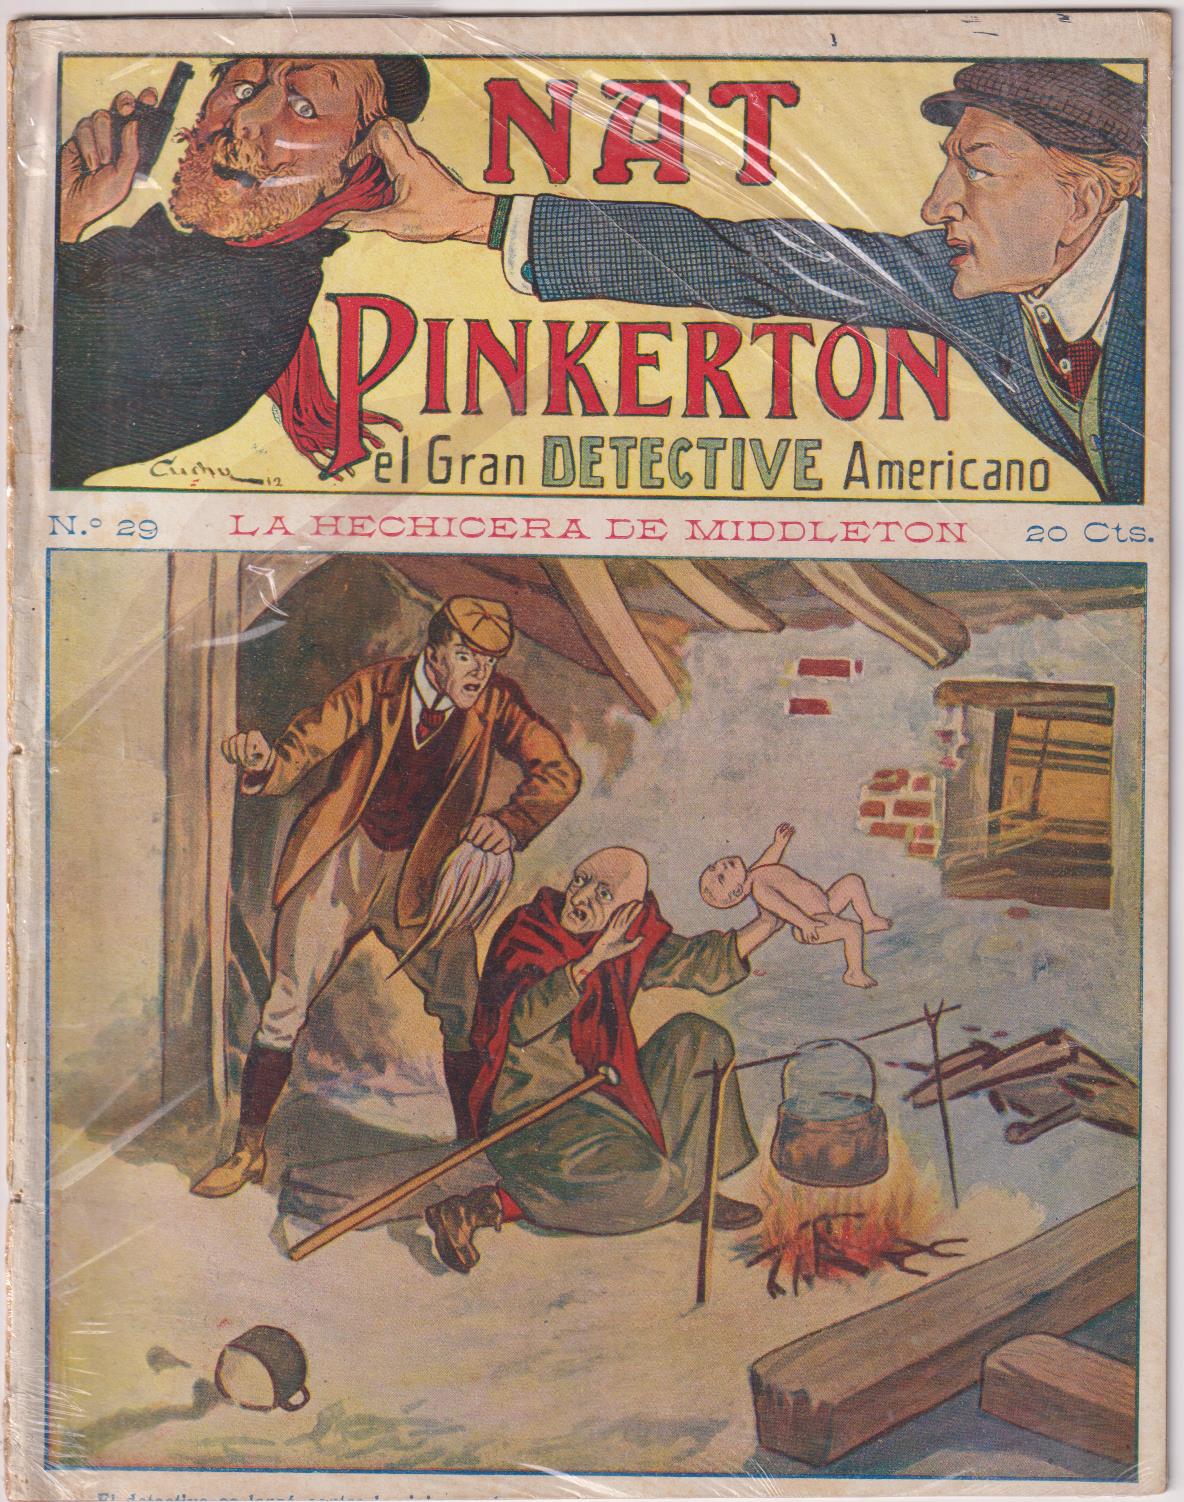 Nat Pinkerton. El Gran detective Americano nº 29. Seguí. (26x21) 31 p.p. con imágenes